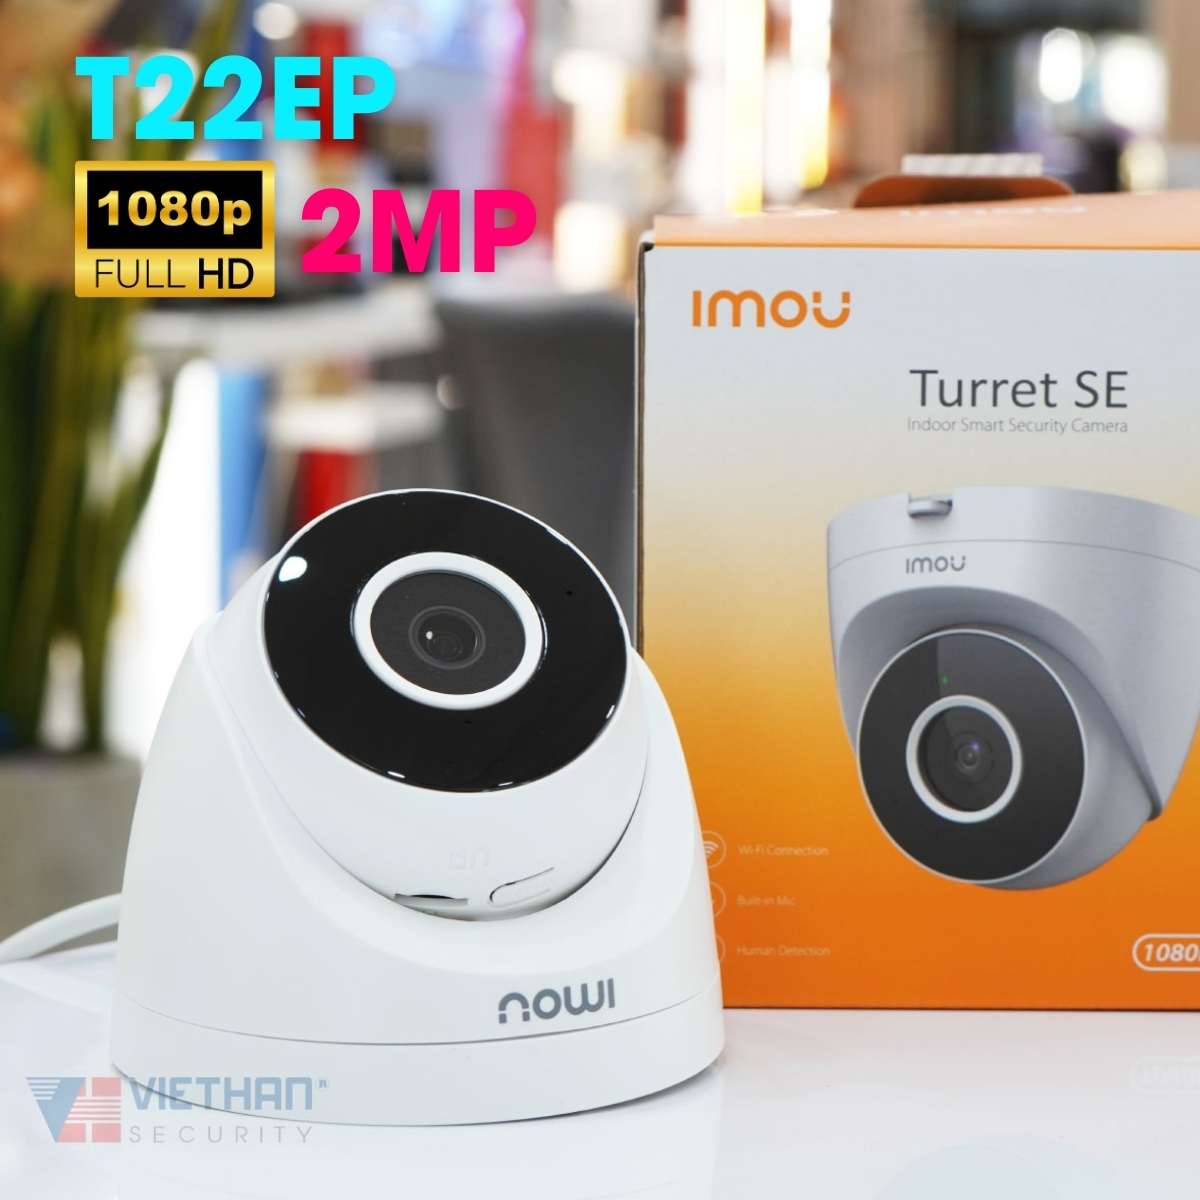 Camera Dome hồng ngoại wifi không dây IMOU IPC-T22EP 2MP 1080P, tích hợp mic, hồng ngoại 30m